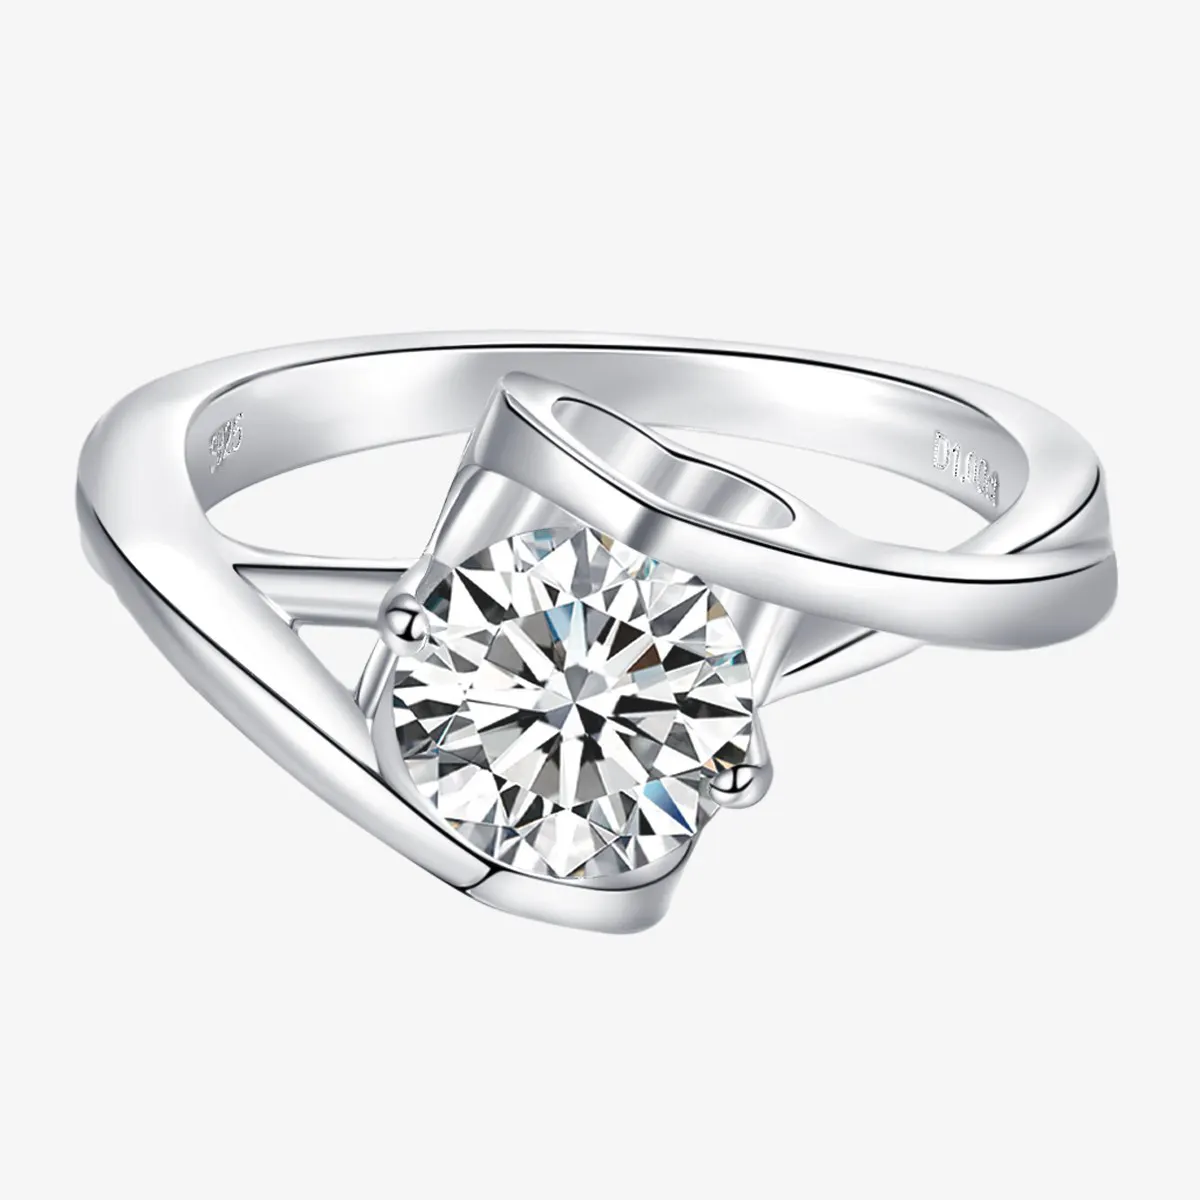 S925 Sterling Zilveren Ronde 1ct Moissanite Ringen Prachtige Glanzende Engel Kus Diamanten Ringen Fijne Sieraden Vrouwen Verlovingsjuwelen